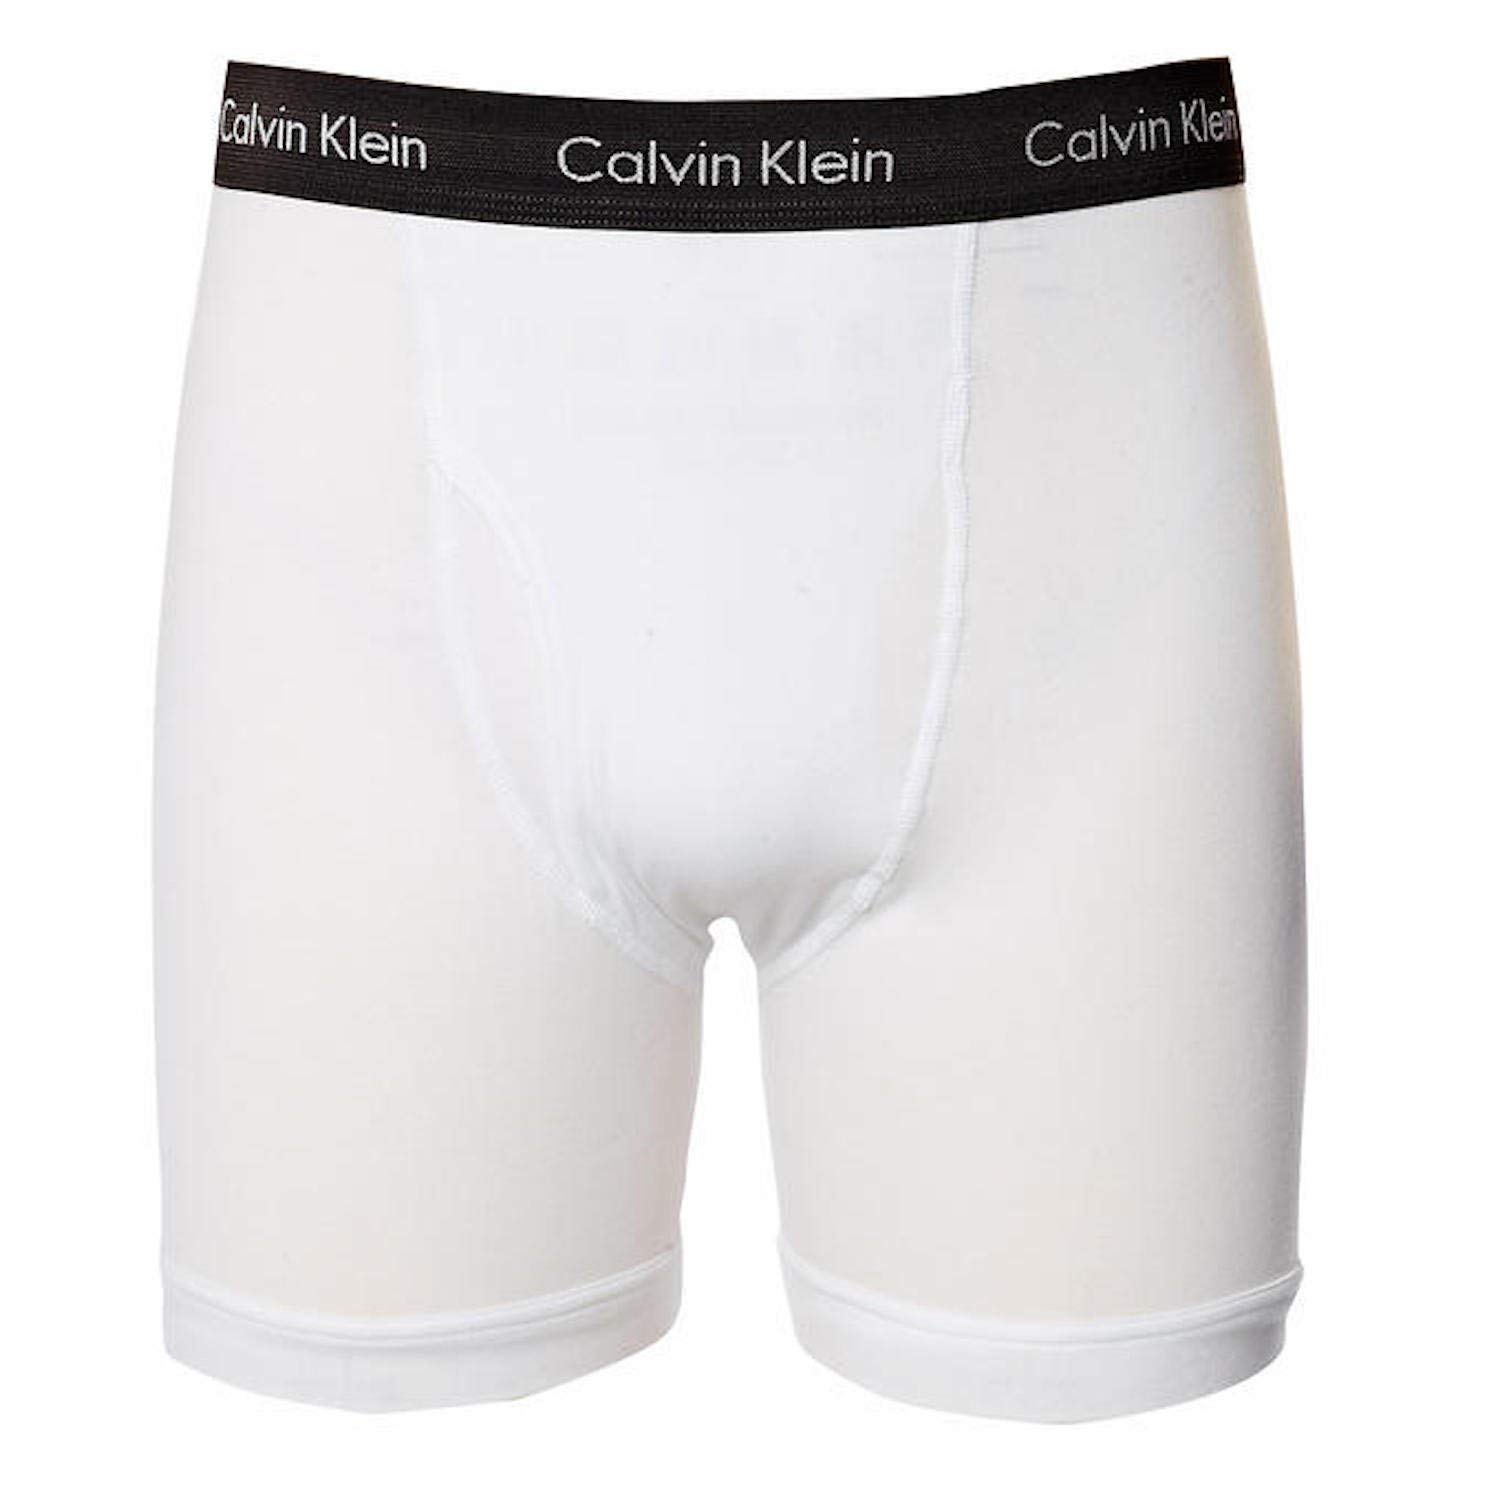 Calvin Klein Men's Underwear Cotton Stretch 3 Pack Boxer Briefs